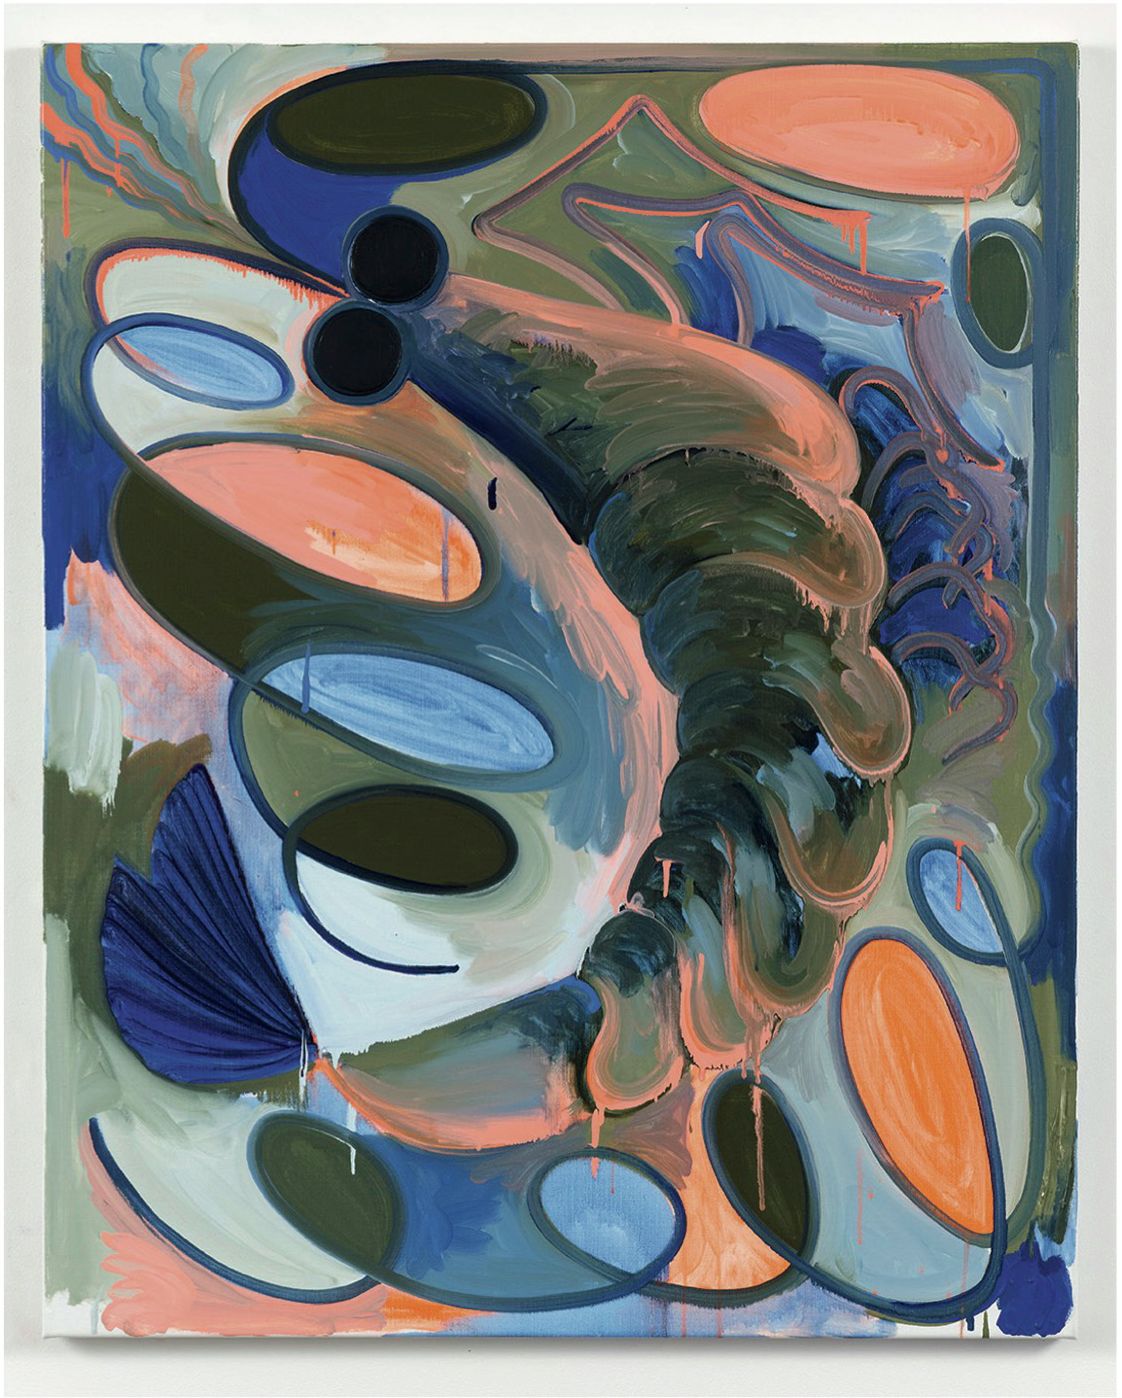 Hugo Capron, Bonbon crevette (Saumon fantaisie), 2021 Huile sur toile100 × 80 cm / 39 3/8 × 31 1/2 in.